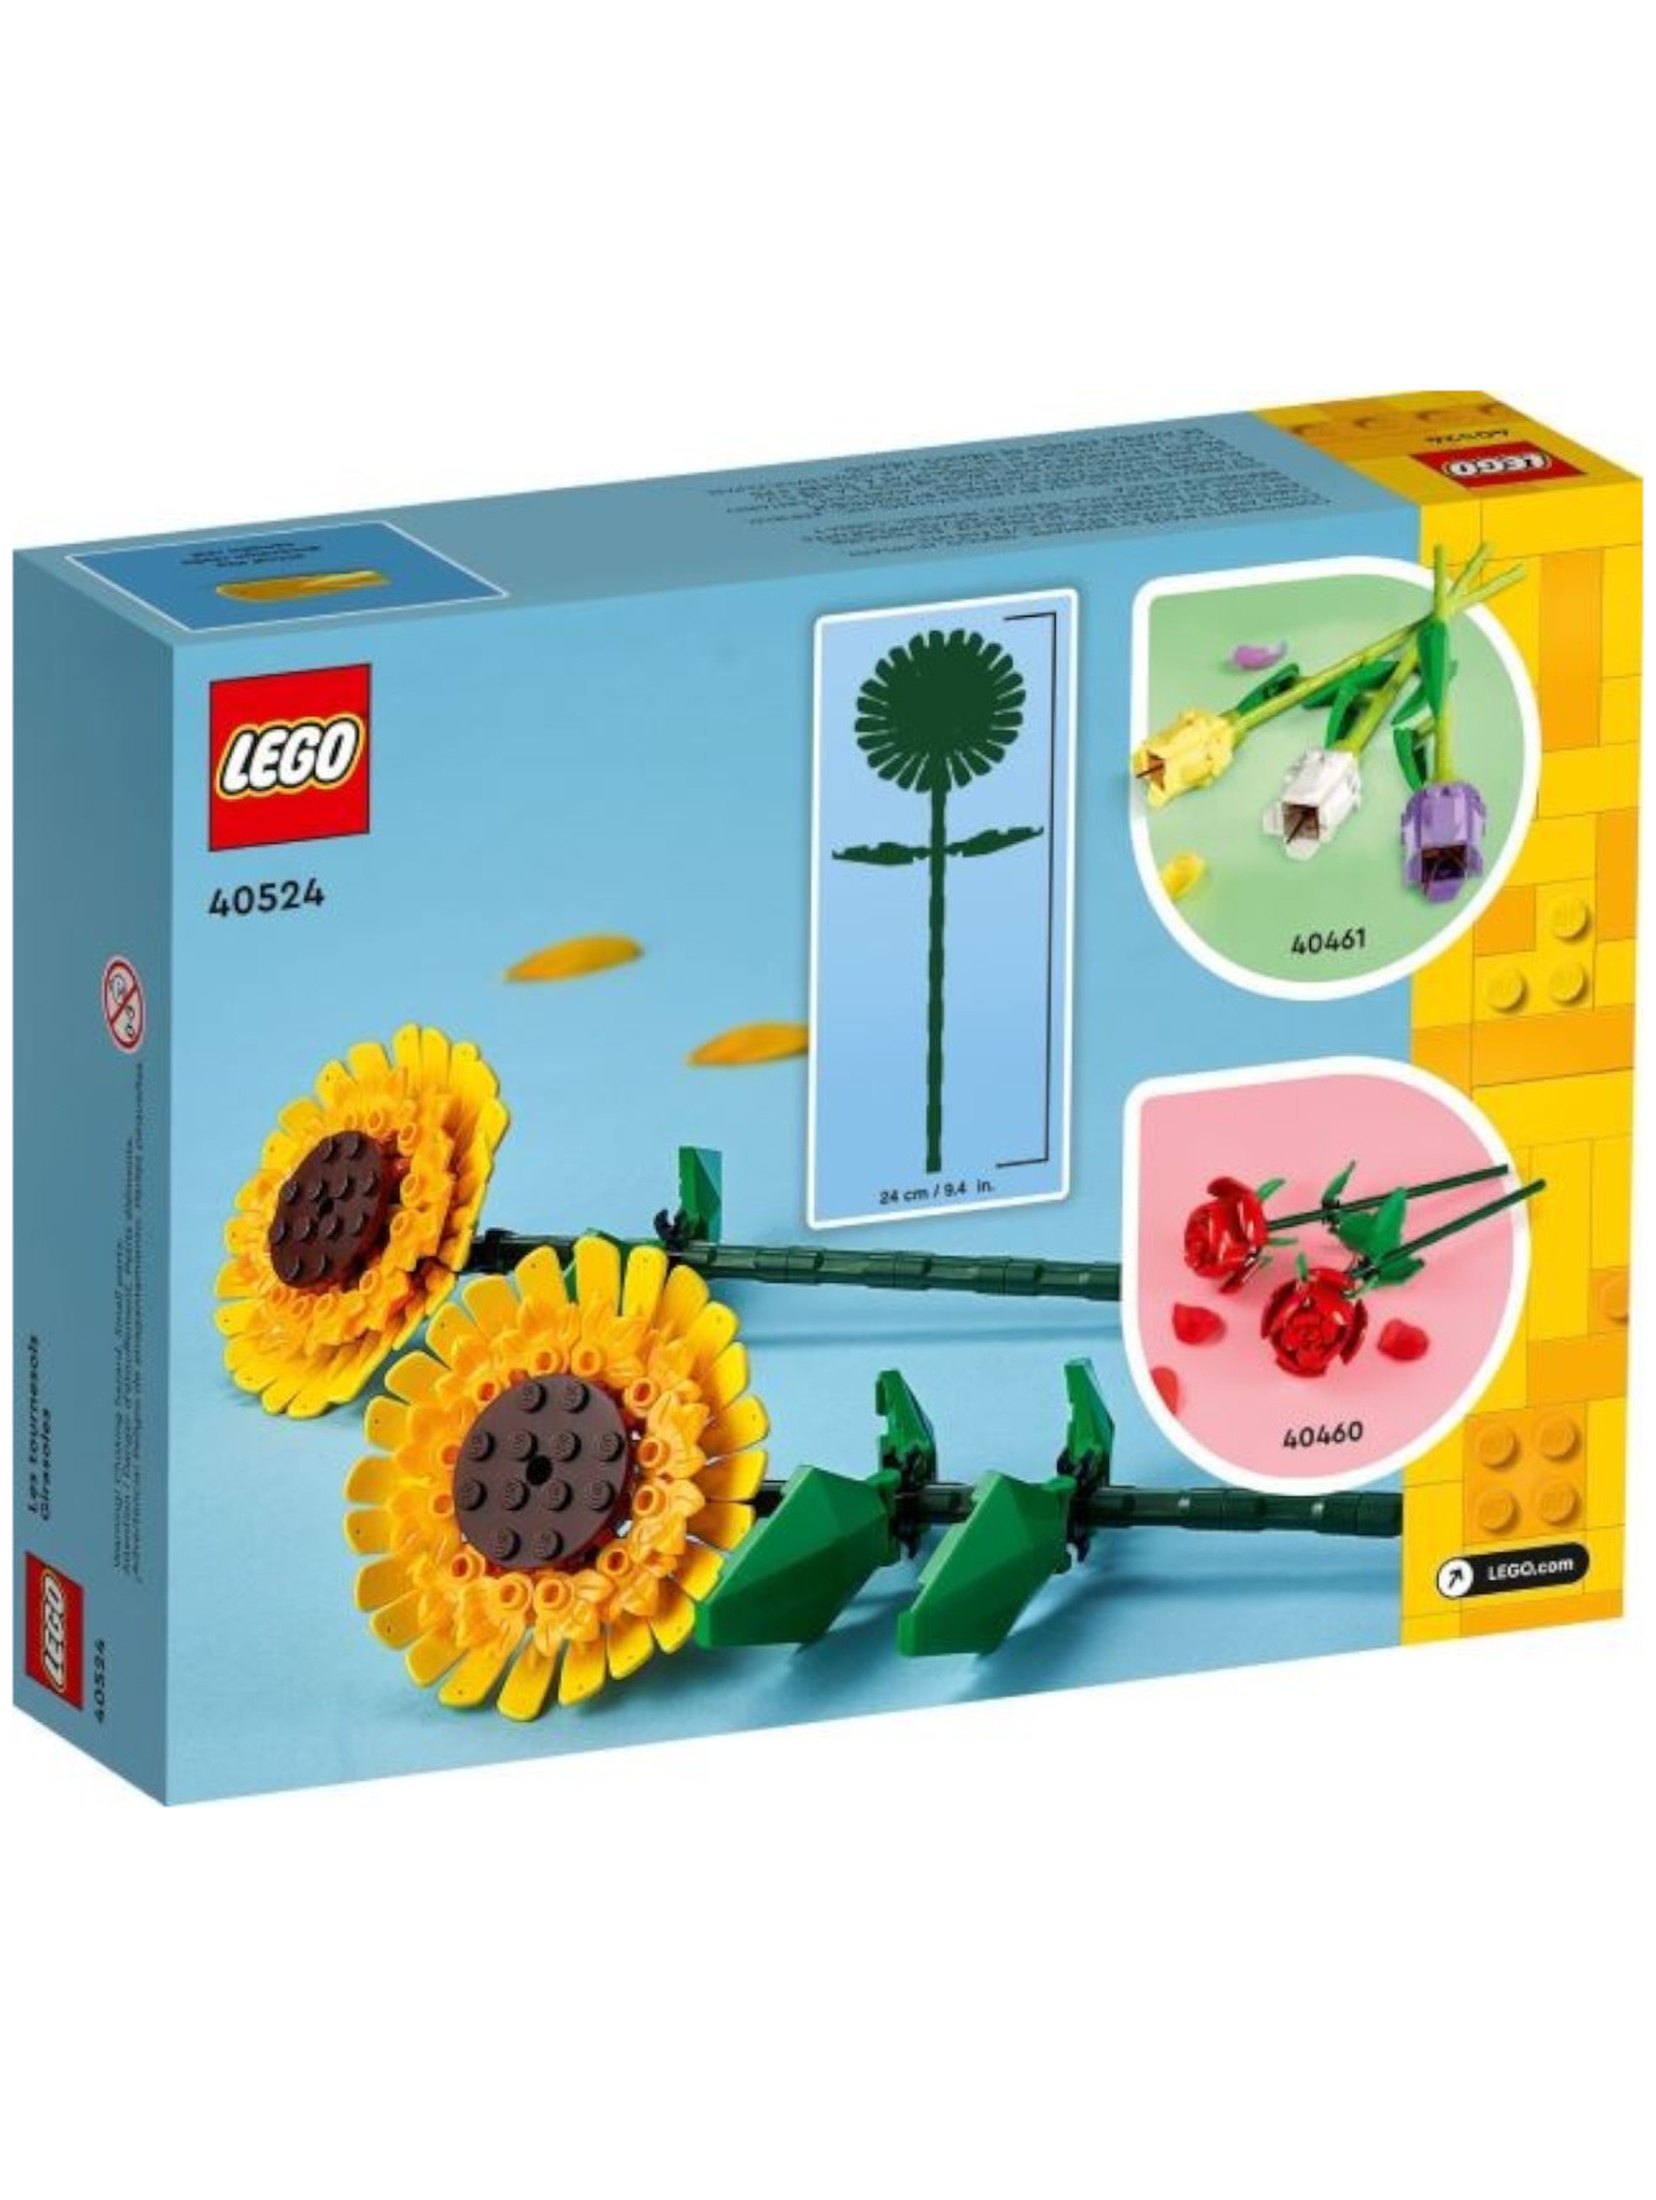 Klocki Lego 40524 Słoneczniki